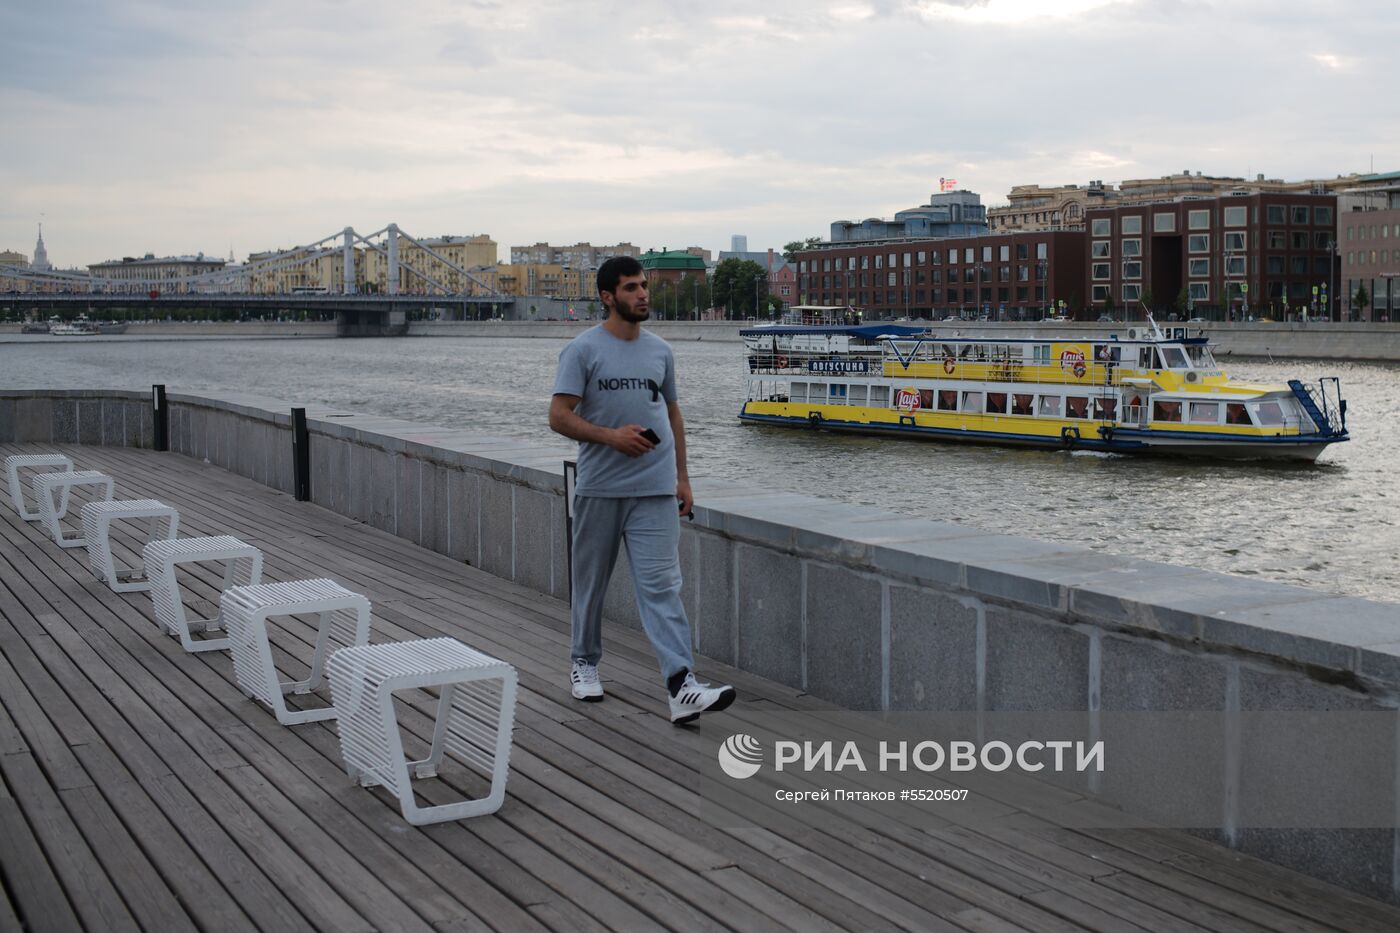 Отдыхающие в Парке искусств "Музеон" в Москве